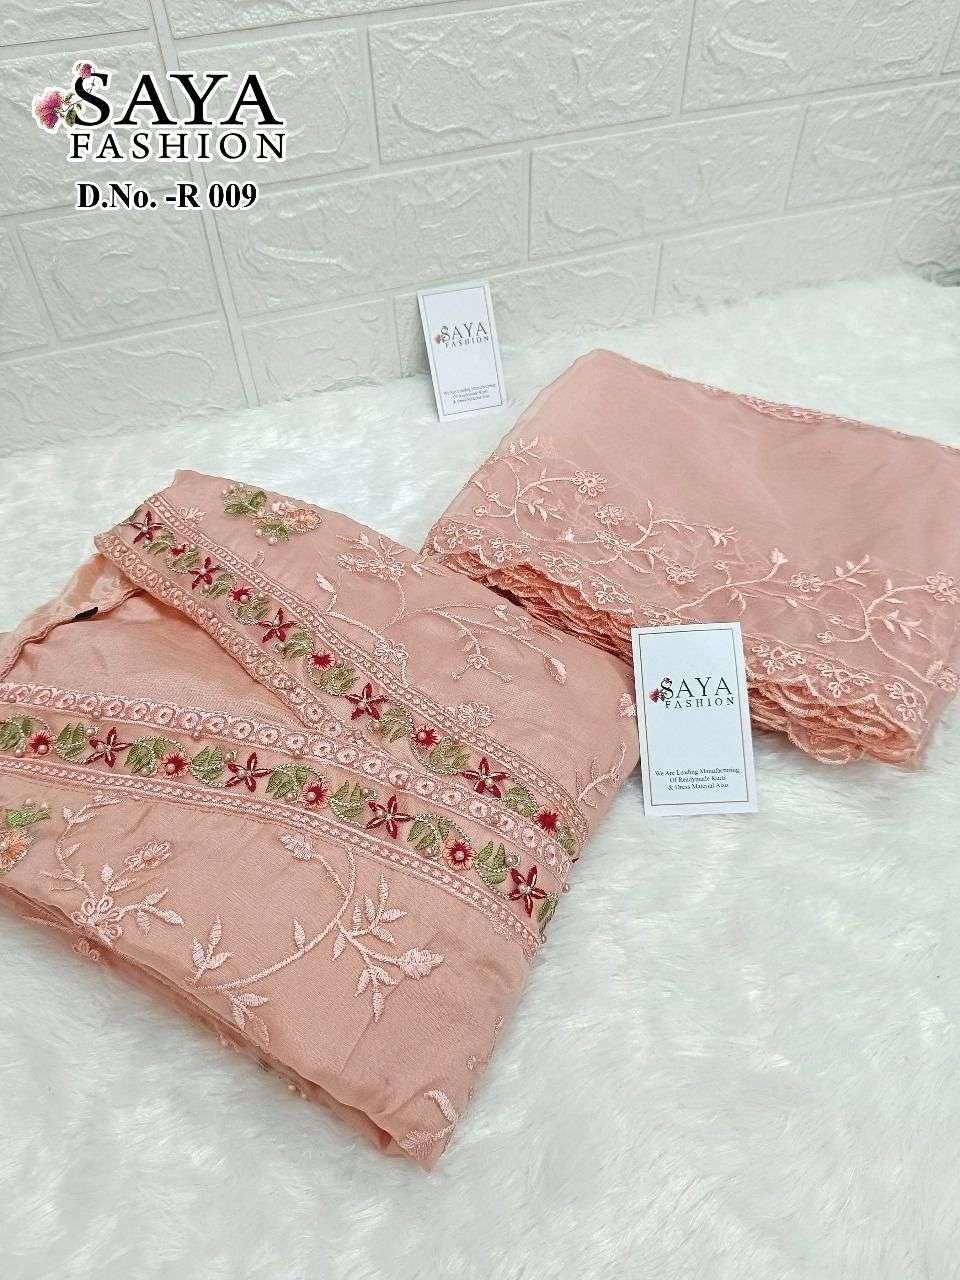 saya fashon 009 colour series latest designer pakistani salwar kameez at wholesale price surat gujarat